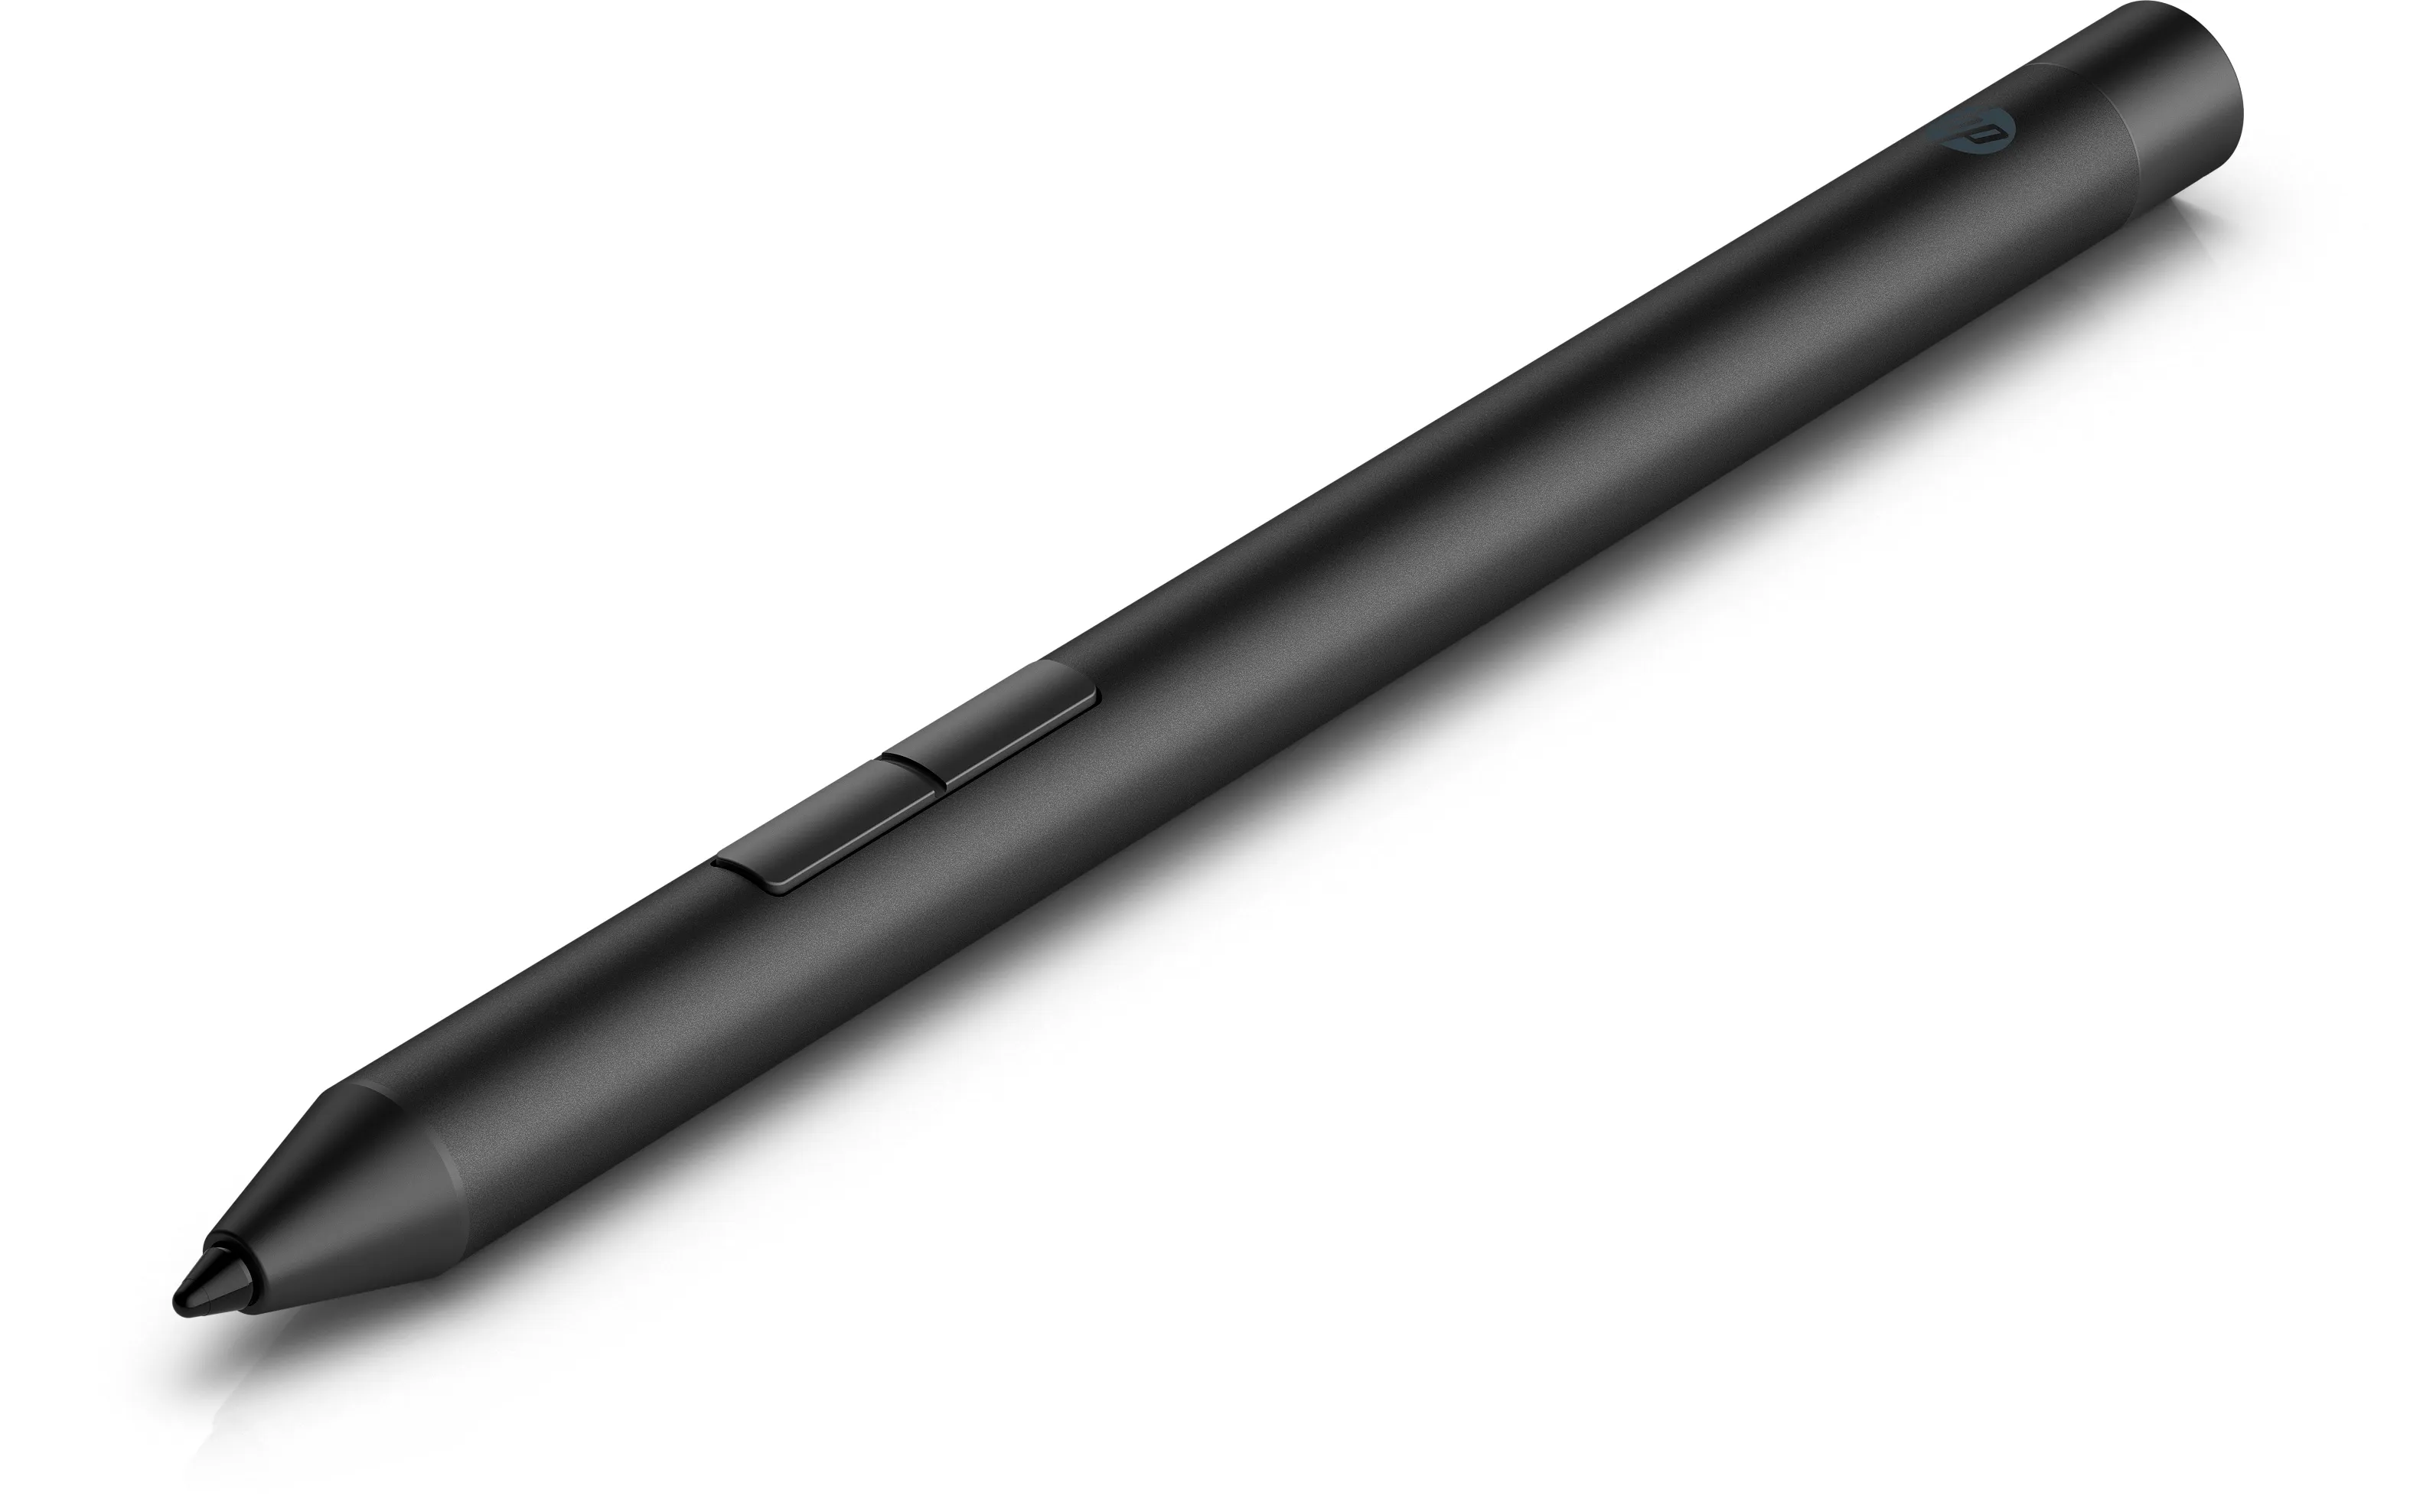 Vente HP Pro Pen HP au meilleur prix - visuel 10